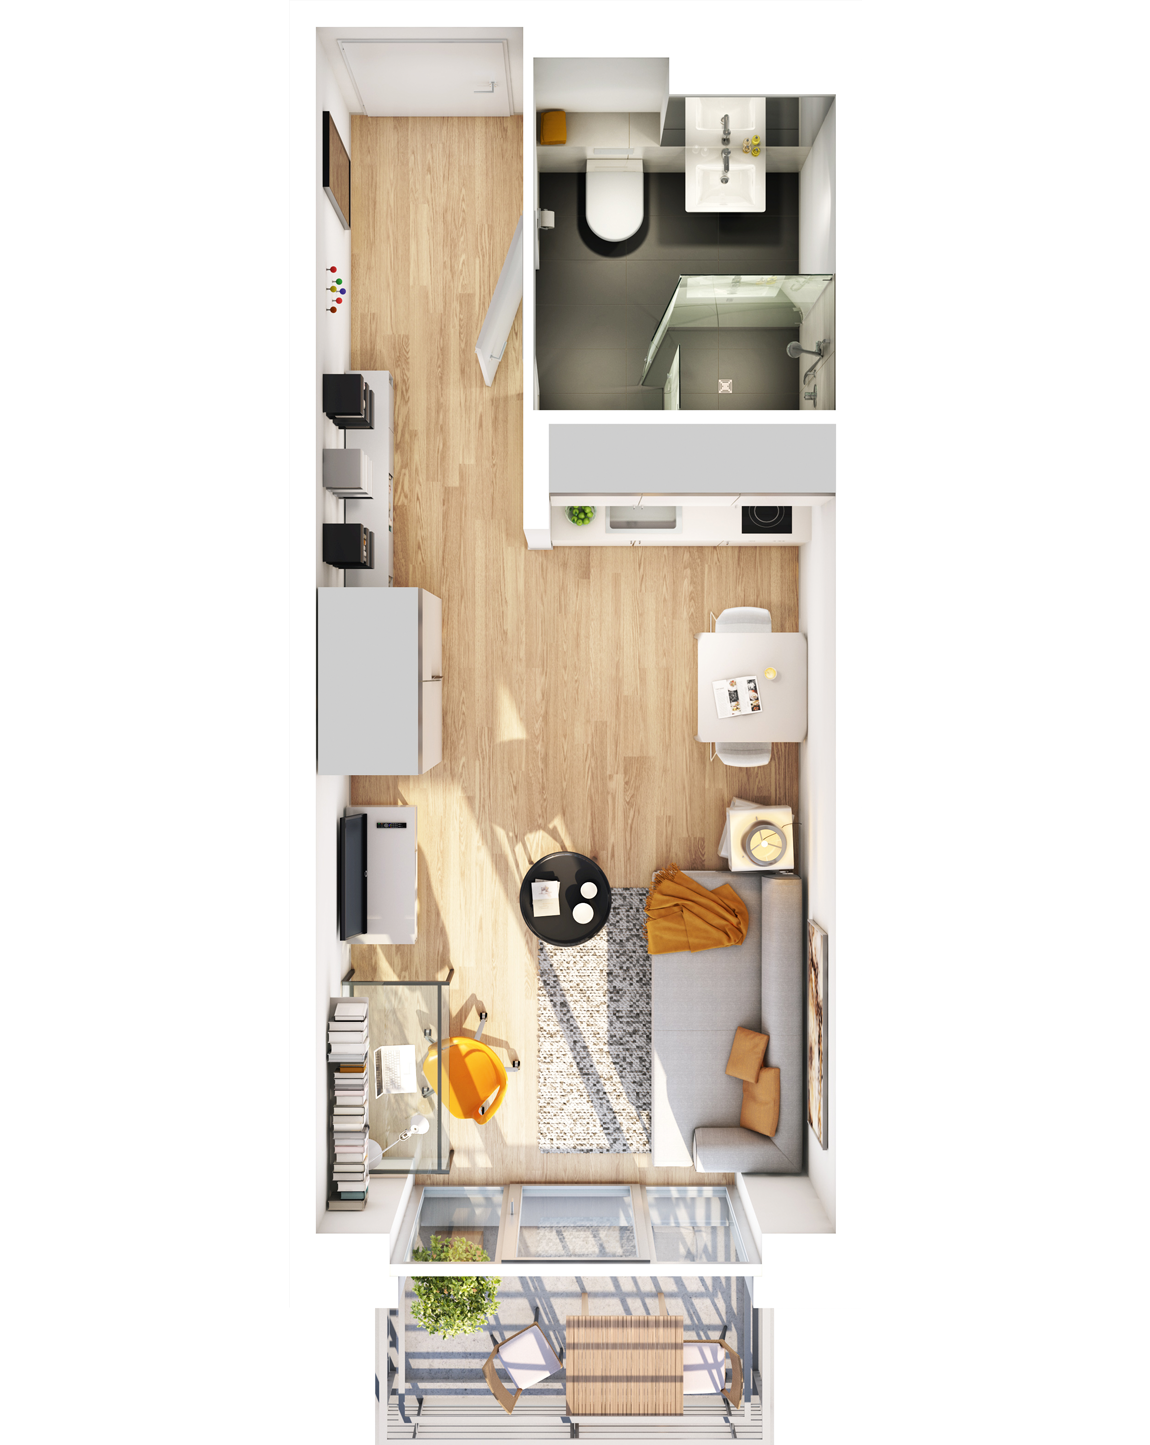 Visualisierung Beispiel 1-Zimmer-Wohnung Typ B mit Bad, integrierter Küche im Wohnbereich und Balkon (spiegelverkehrt) im studiosus 5 Apartmenthaus in Augsburg